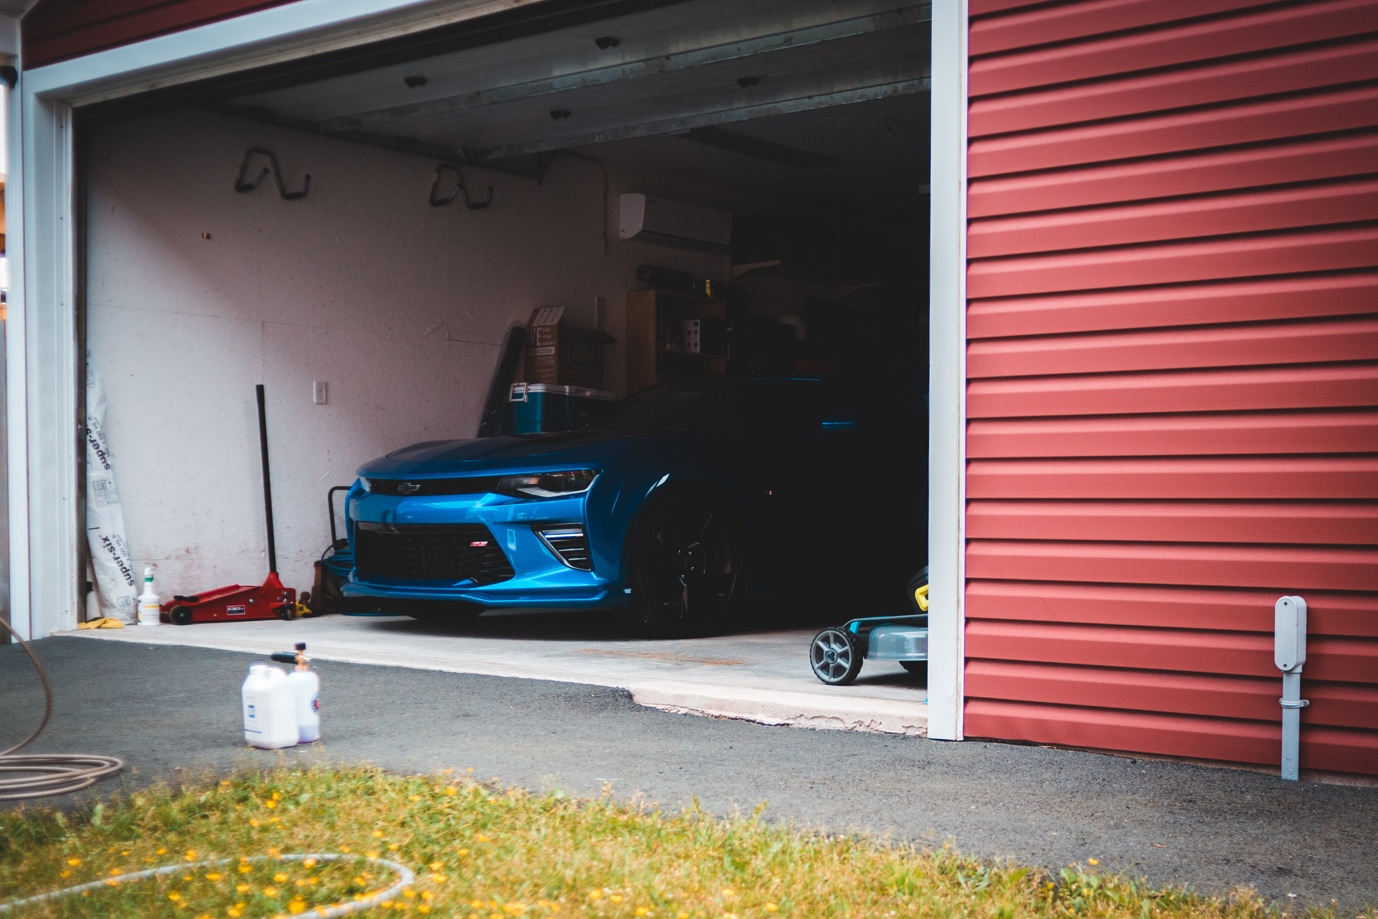 A car parked inside a garage